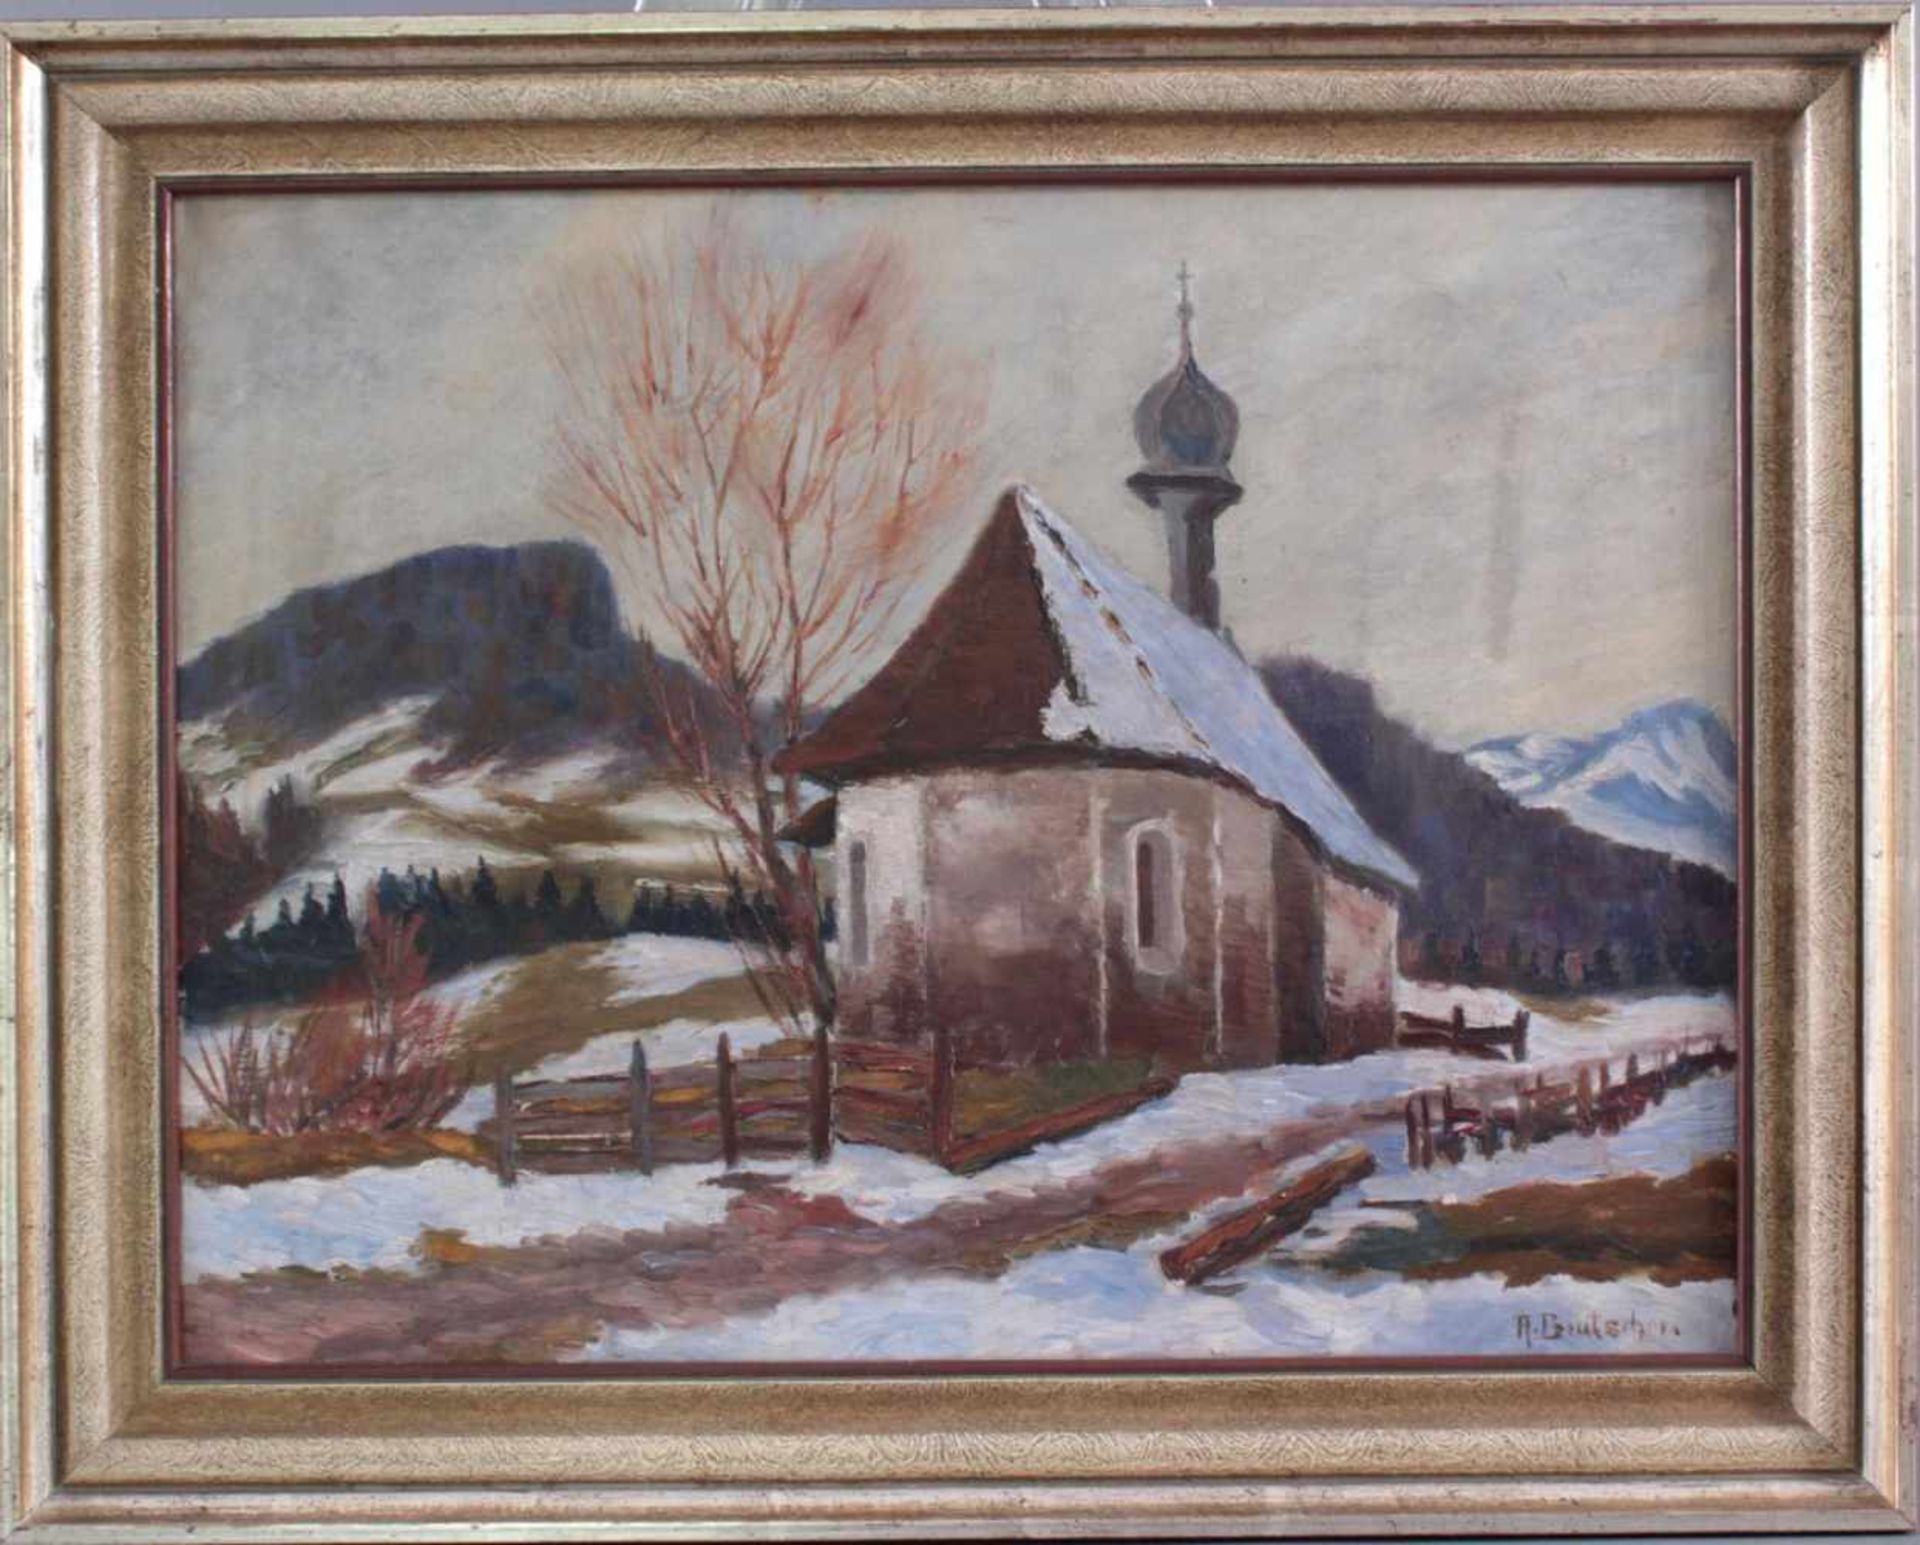 Brutscher, A., Künstler des 20. Jh. tätig in Wangen, "Kapelle im Gebirge"Öl auf Leinwand gemalt,